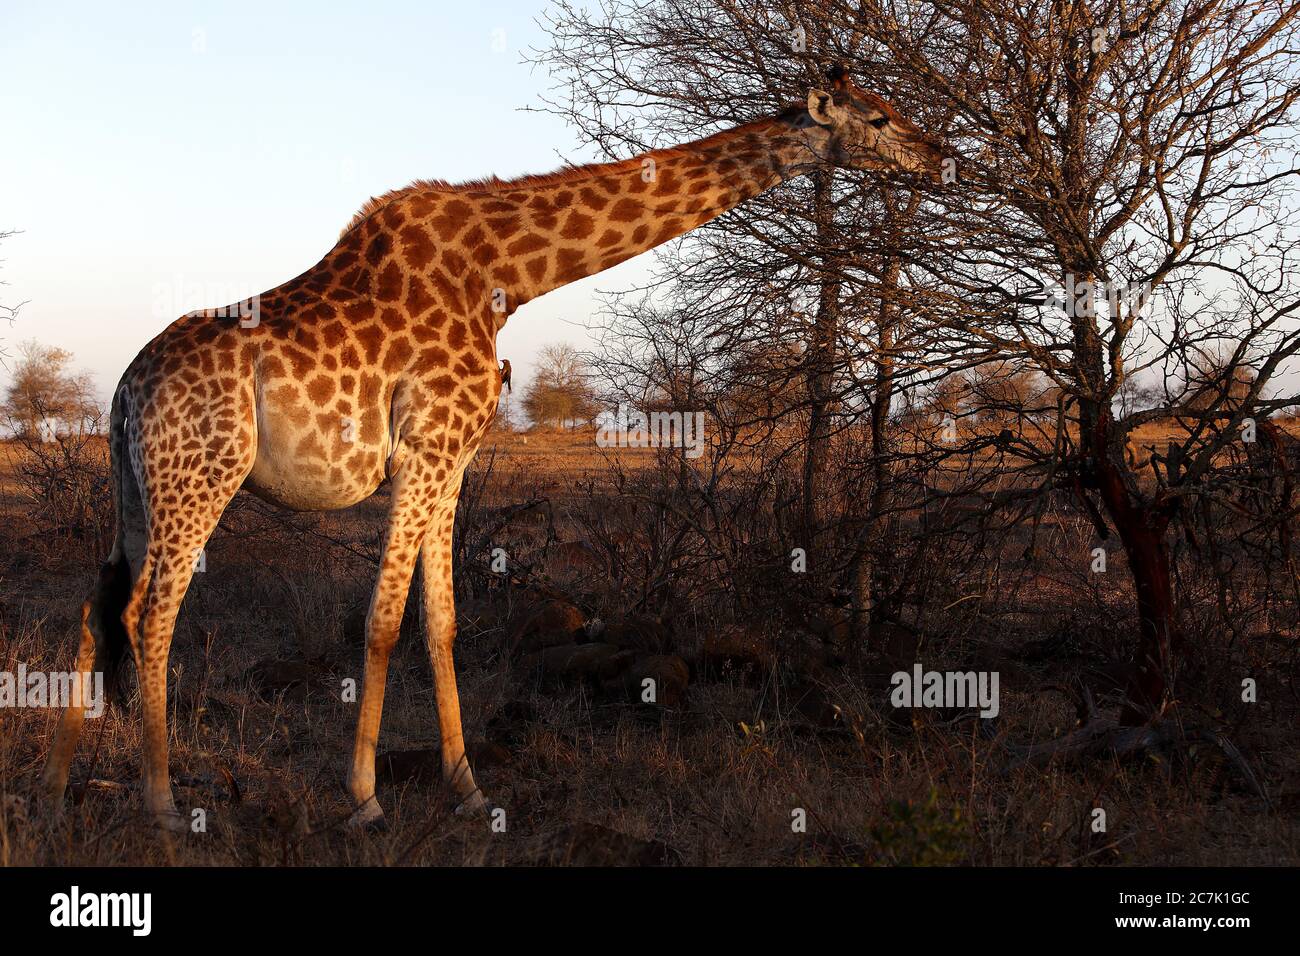 Girafe, Giraffa camelopardalis, dans le parc national Kruger, en Afrique du Sud, la girafe est un mammifère ungulé africain à bout égal, le plus grand animal terrestre vivant et le plus grand ruminant, Banque D'Images